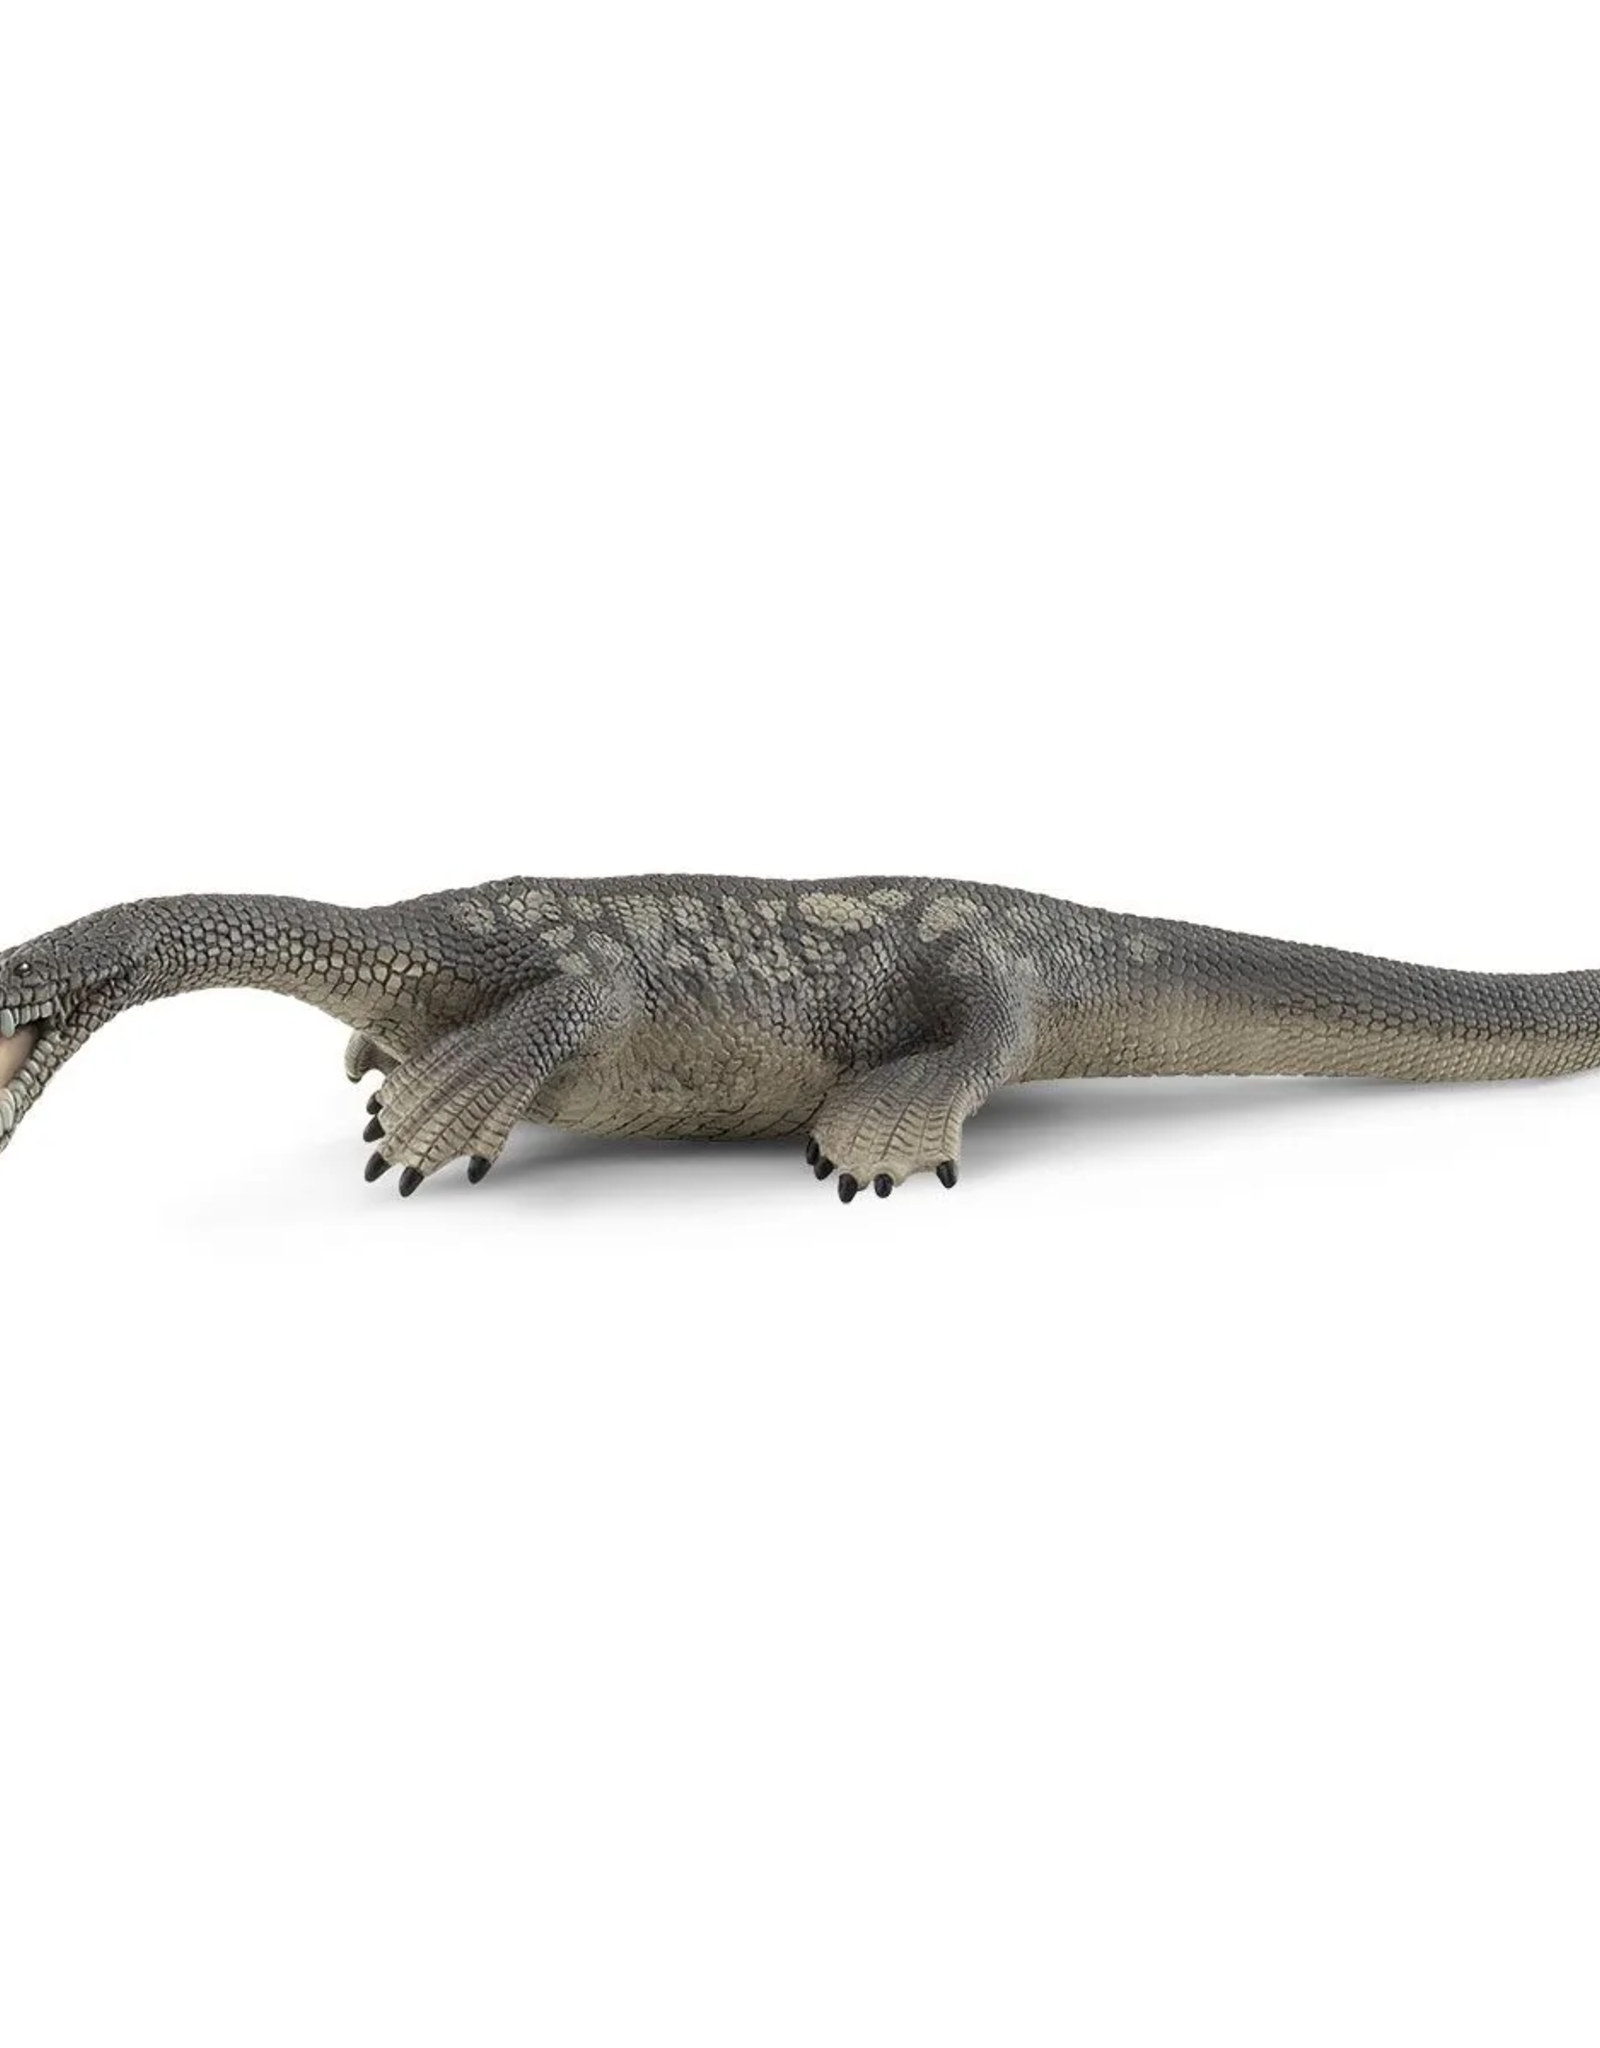 Schleich Schleich Nothosaurus 2022